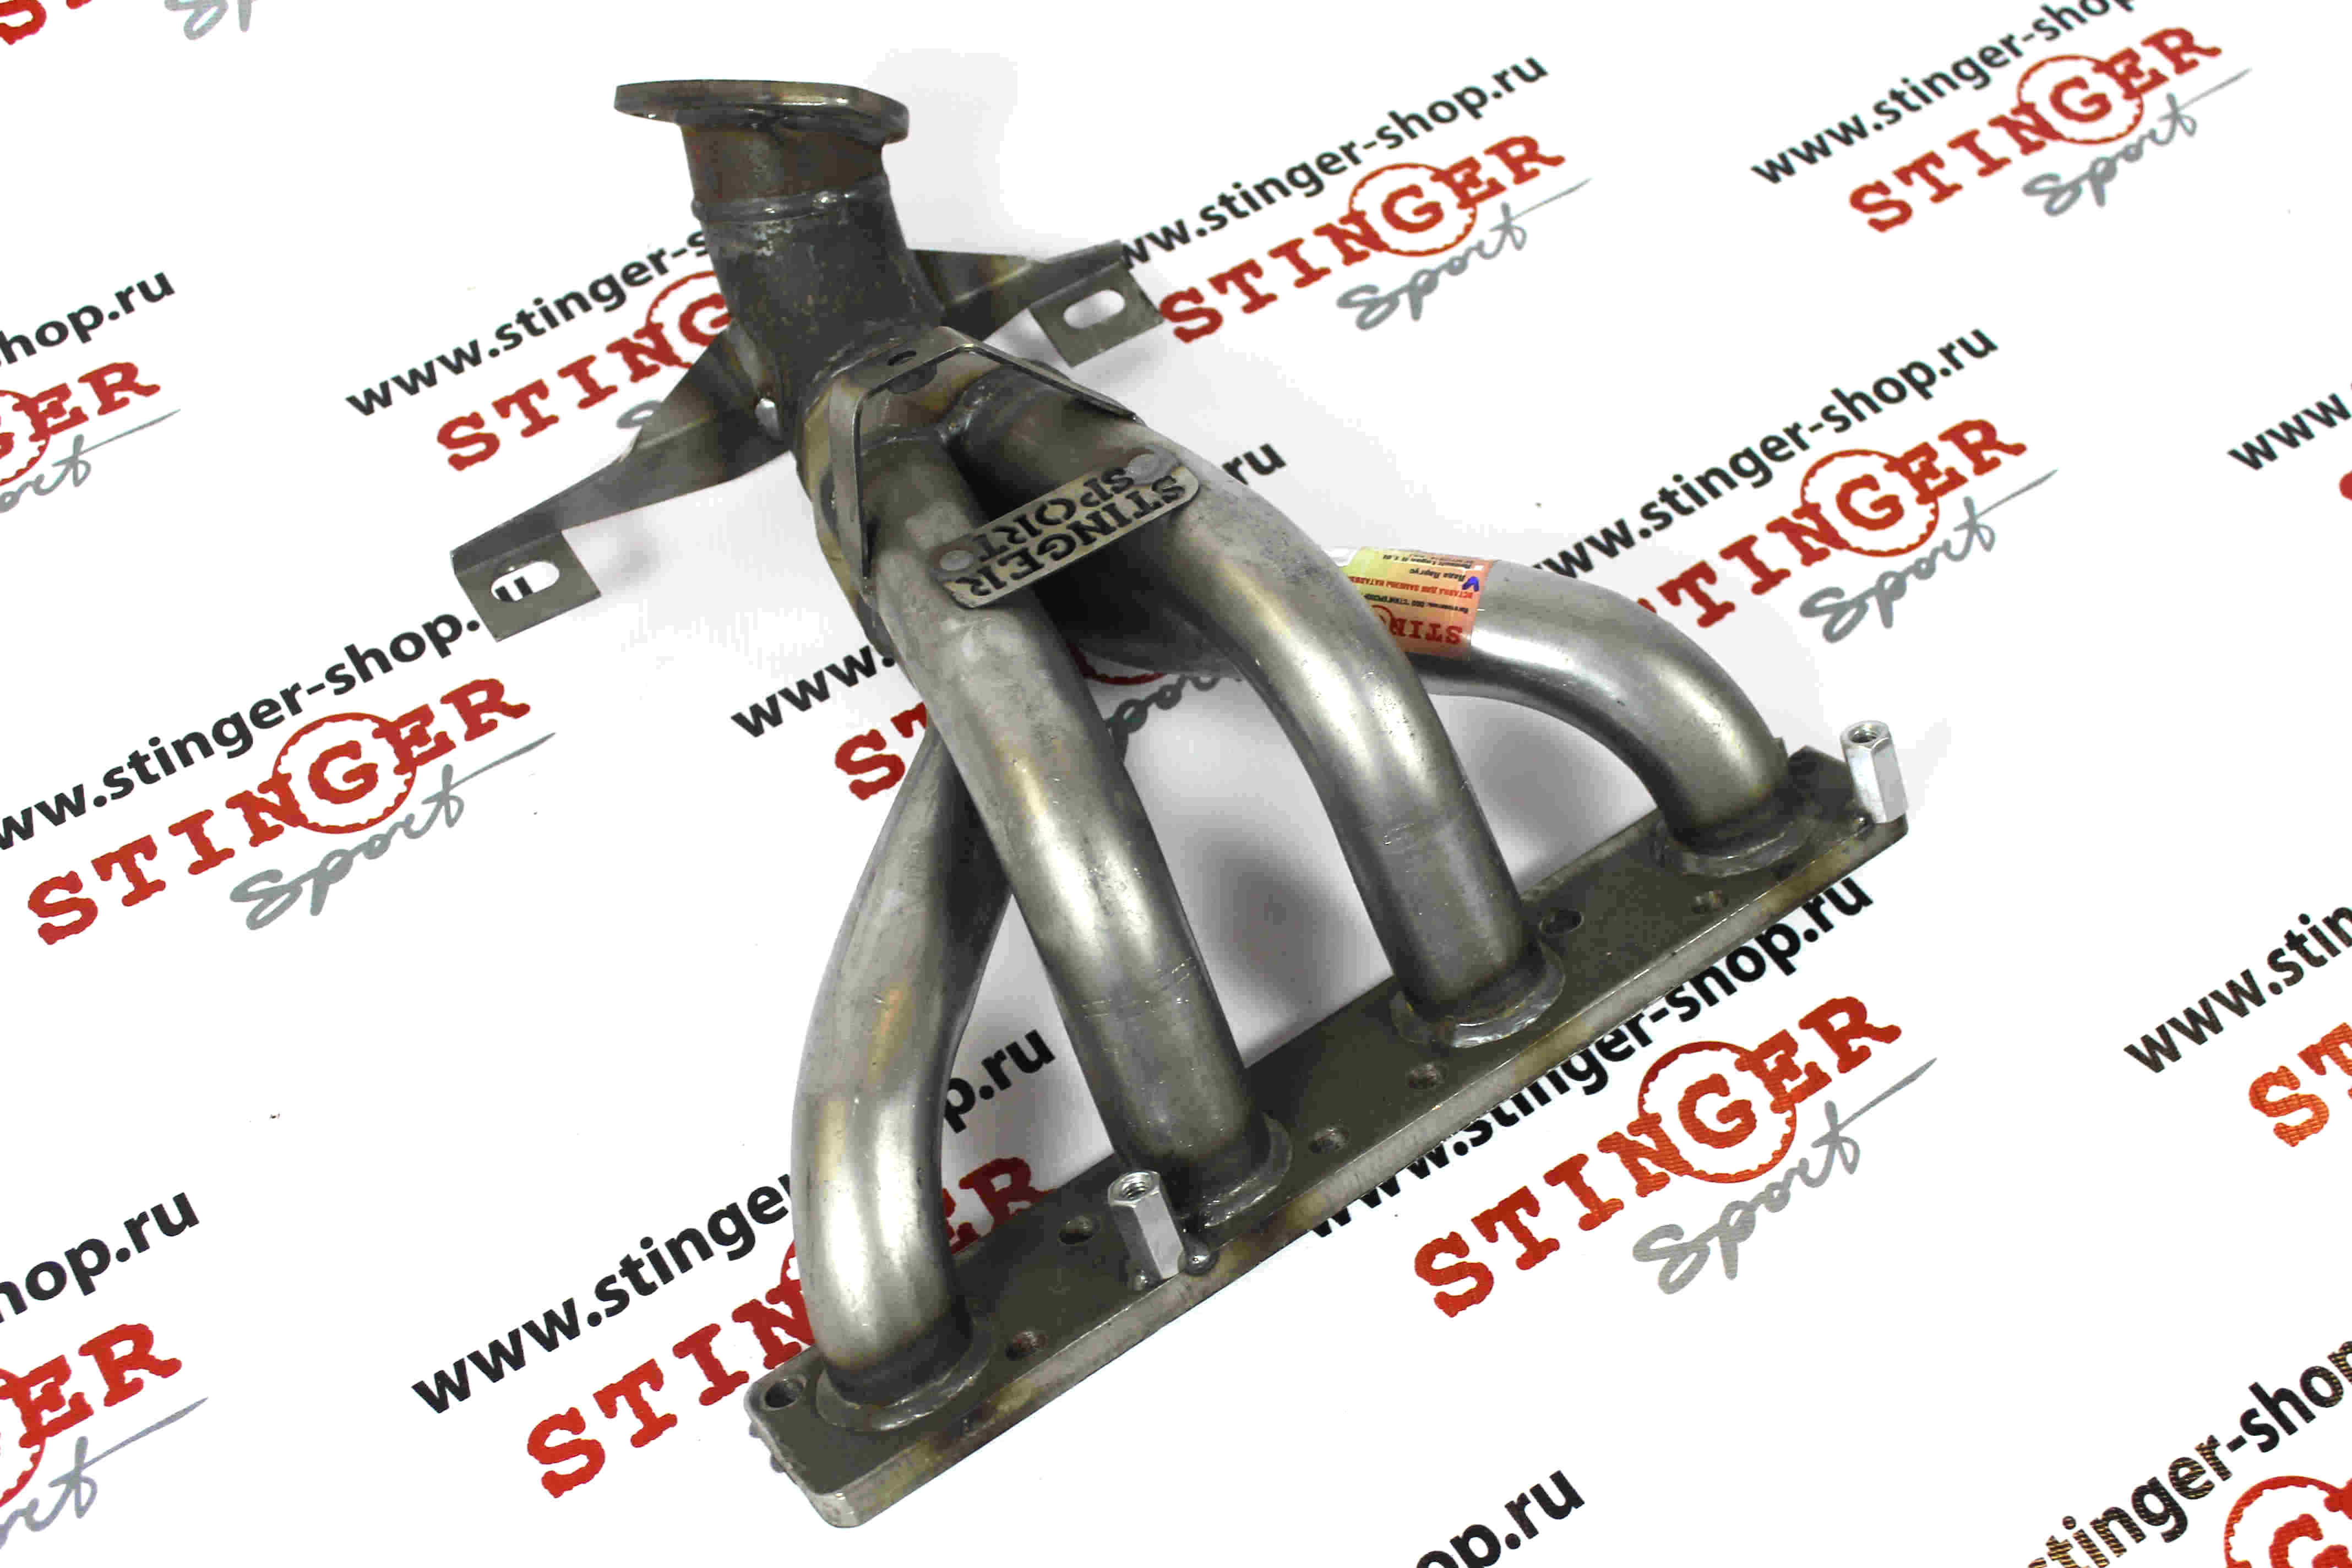 Вставка для замены катализатора "Stinger Sport" 4-1 16V для а/м ВАЗ Ларгус 1.6L (106 л.с.) (KS045L) (один датчик кислорода)